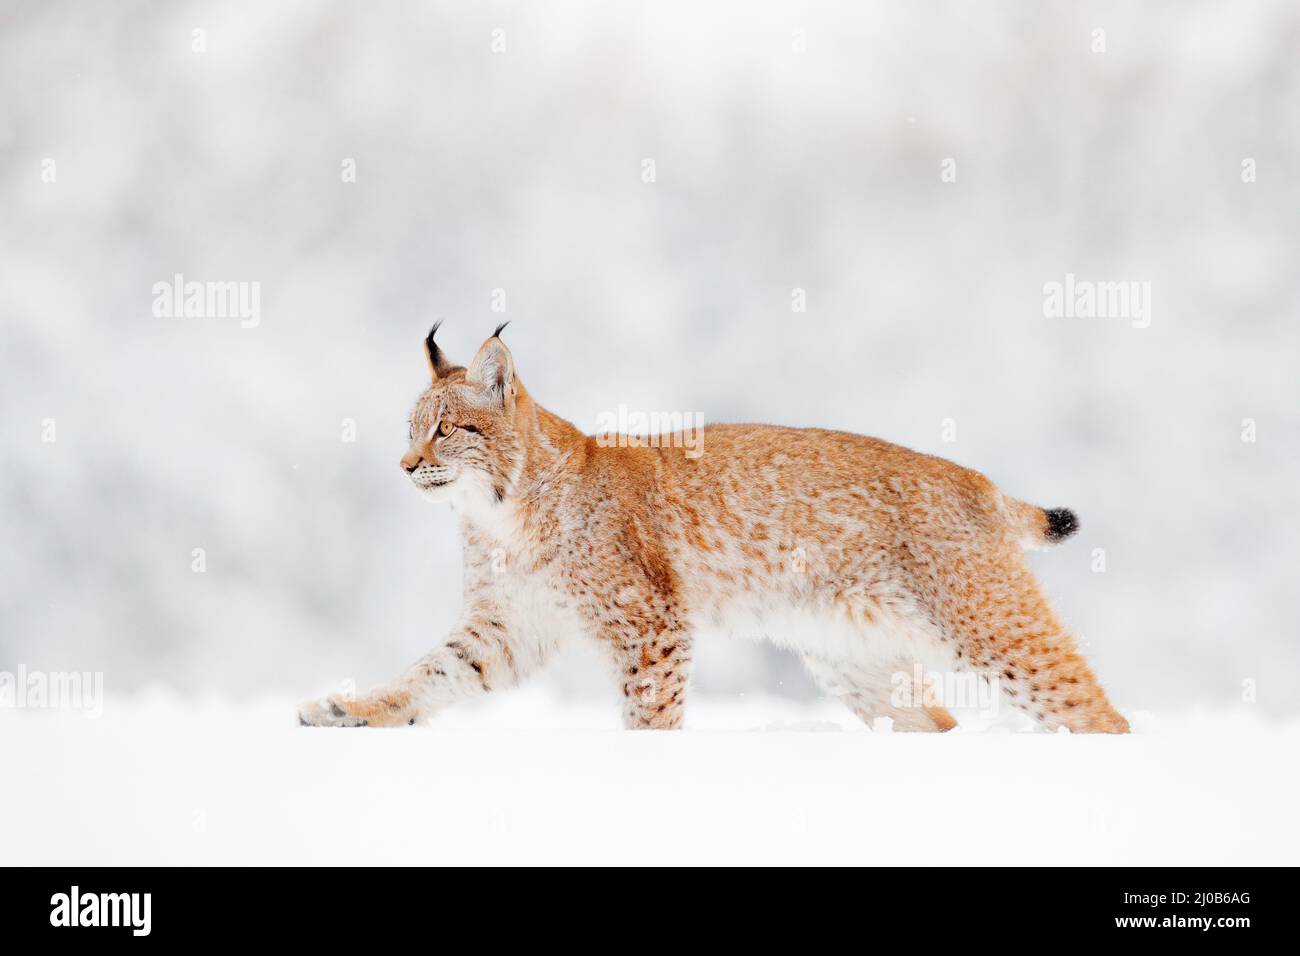 Vida salvaje de invierno en Europa. Lynx en la nieve, bosque nevado en febrero. Vida salvaje escena de la naturaleza, Alemania. Vida salvaje de invierno en Europa. Foto de stock